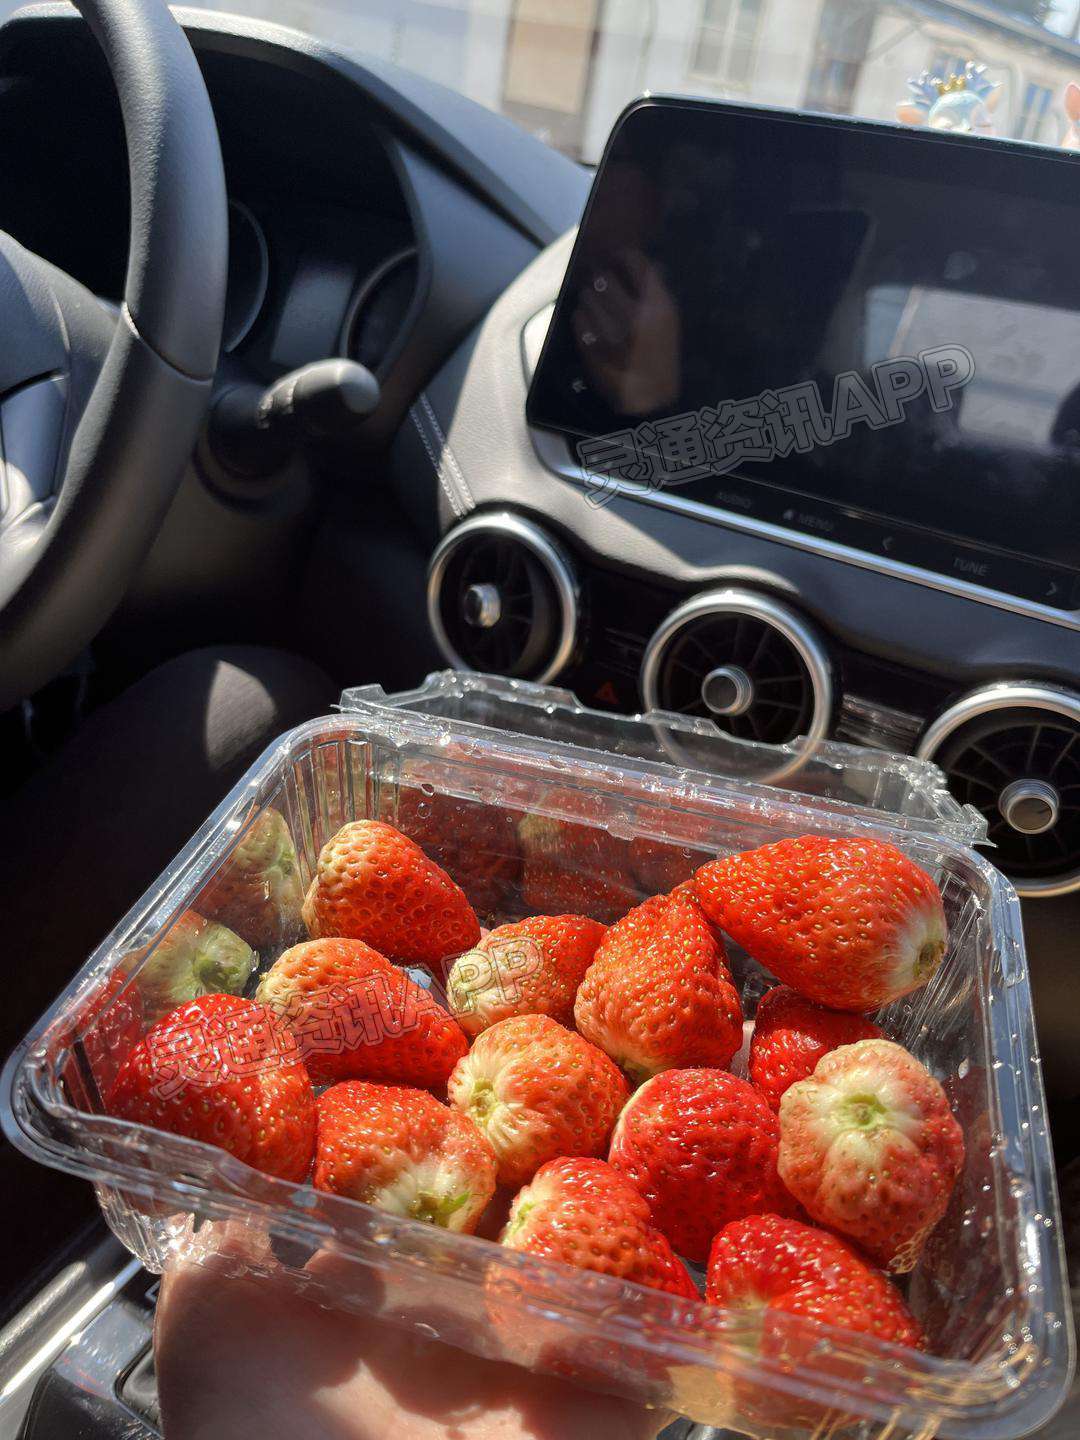 半岛官方下载：太爱吃草莓了！从年前草莓刚上市就开始买了，到现在估计吃了有1000块钱